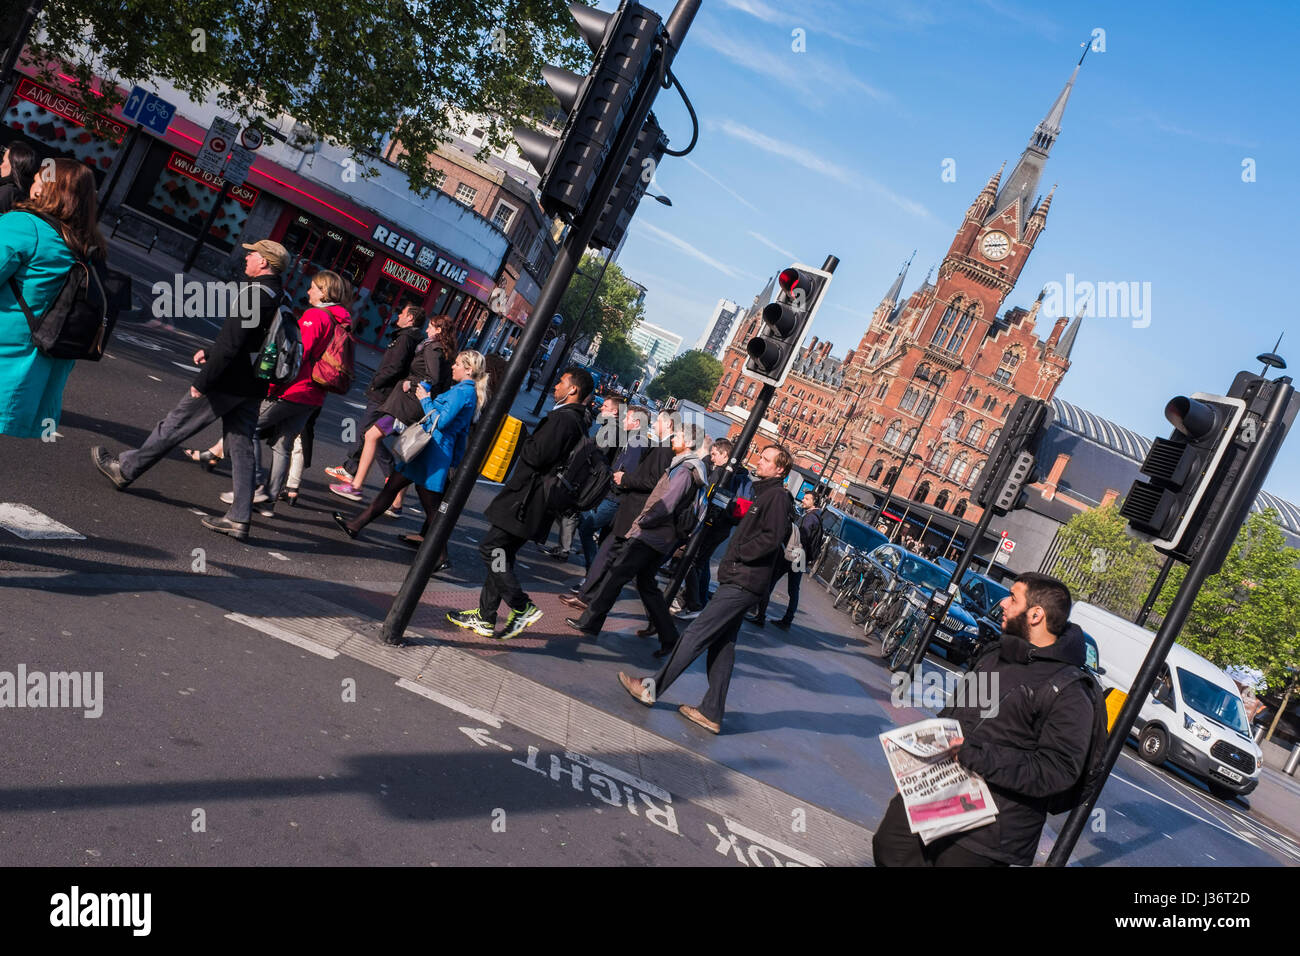 Les personnes qui traversent Euston Road après la sortie de la gare de King's Cross le matin, Londres, Angleterre, Royaume-Uni Banque D'Images